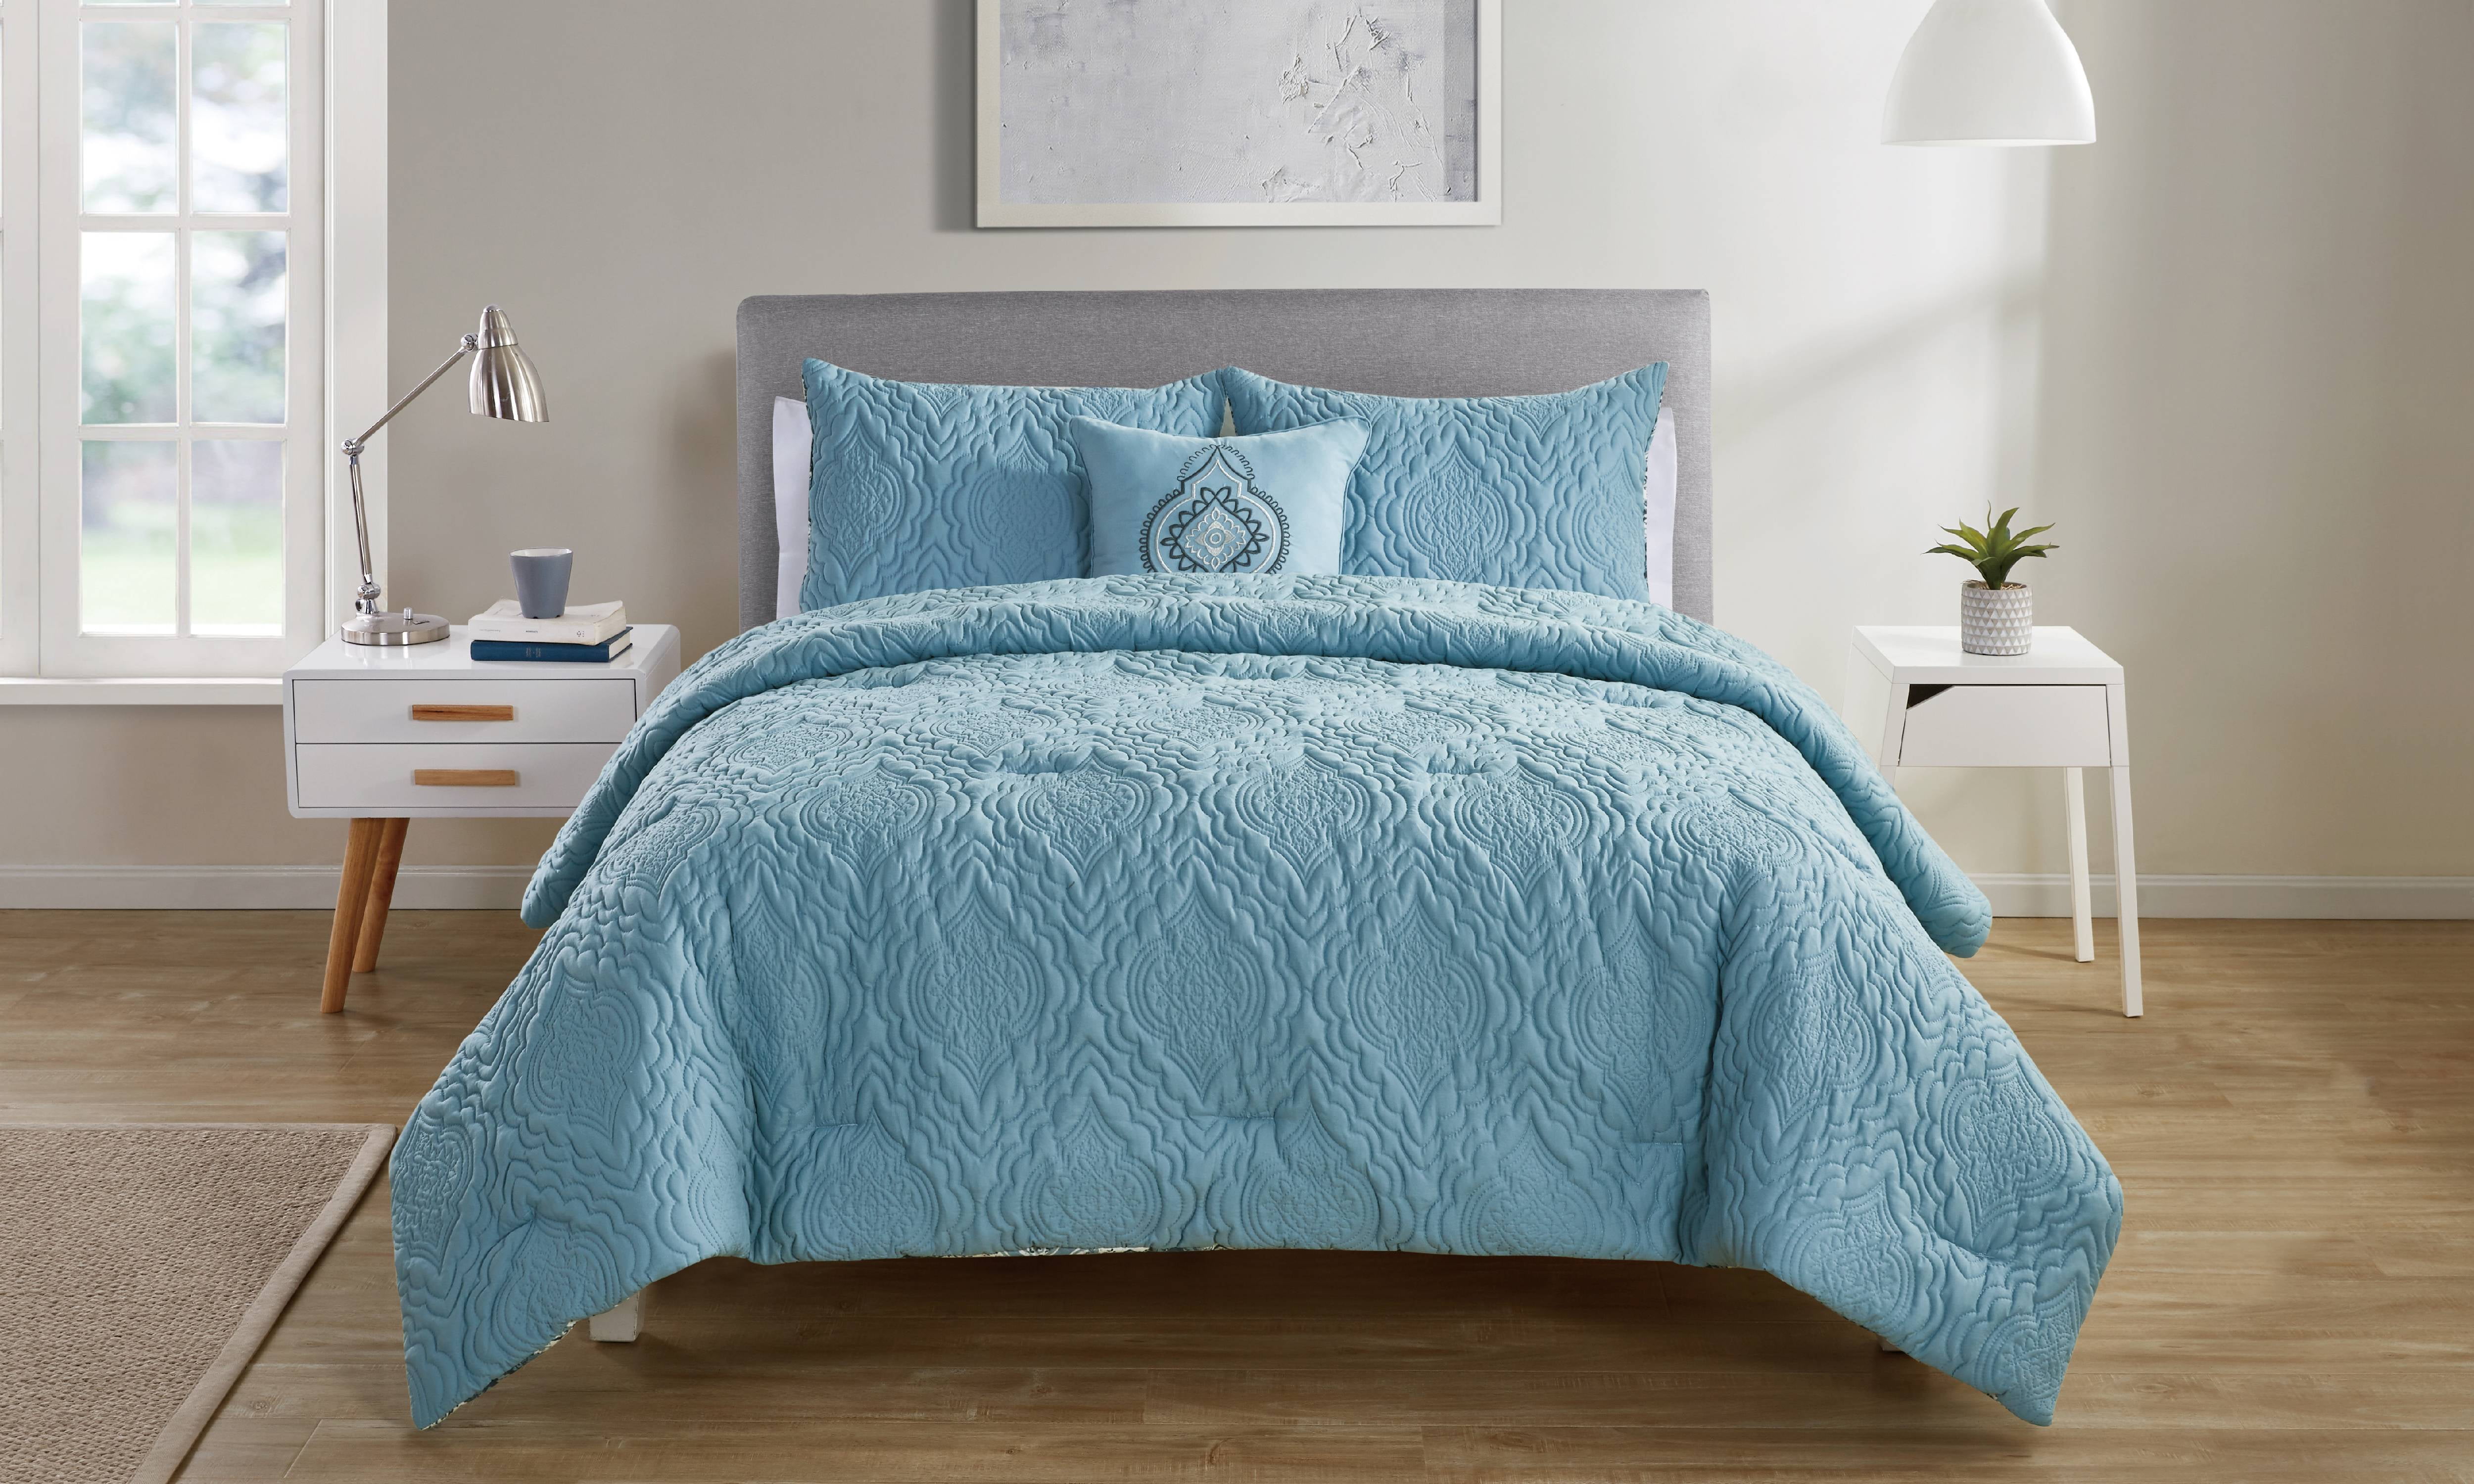 VCNY Home Luanna Reversible Medallion Comforter Set, Full/Queen, Light Blue